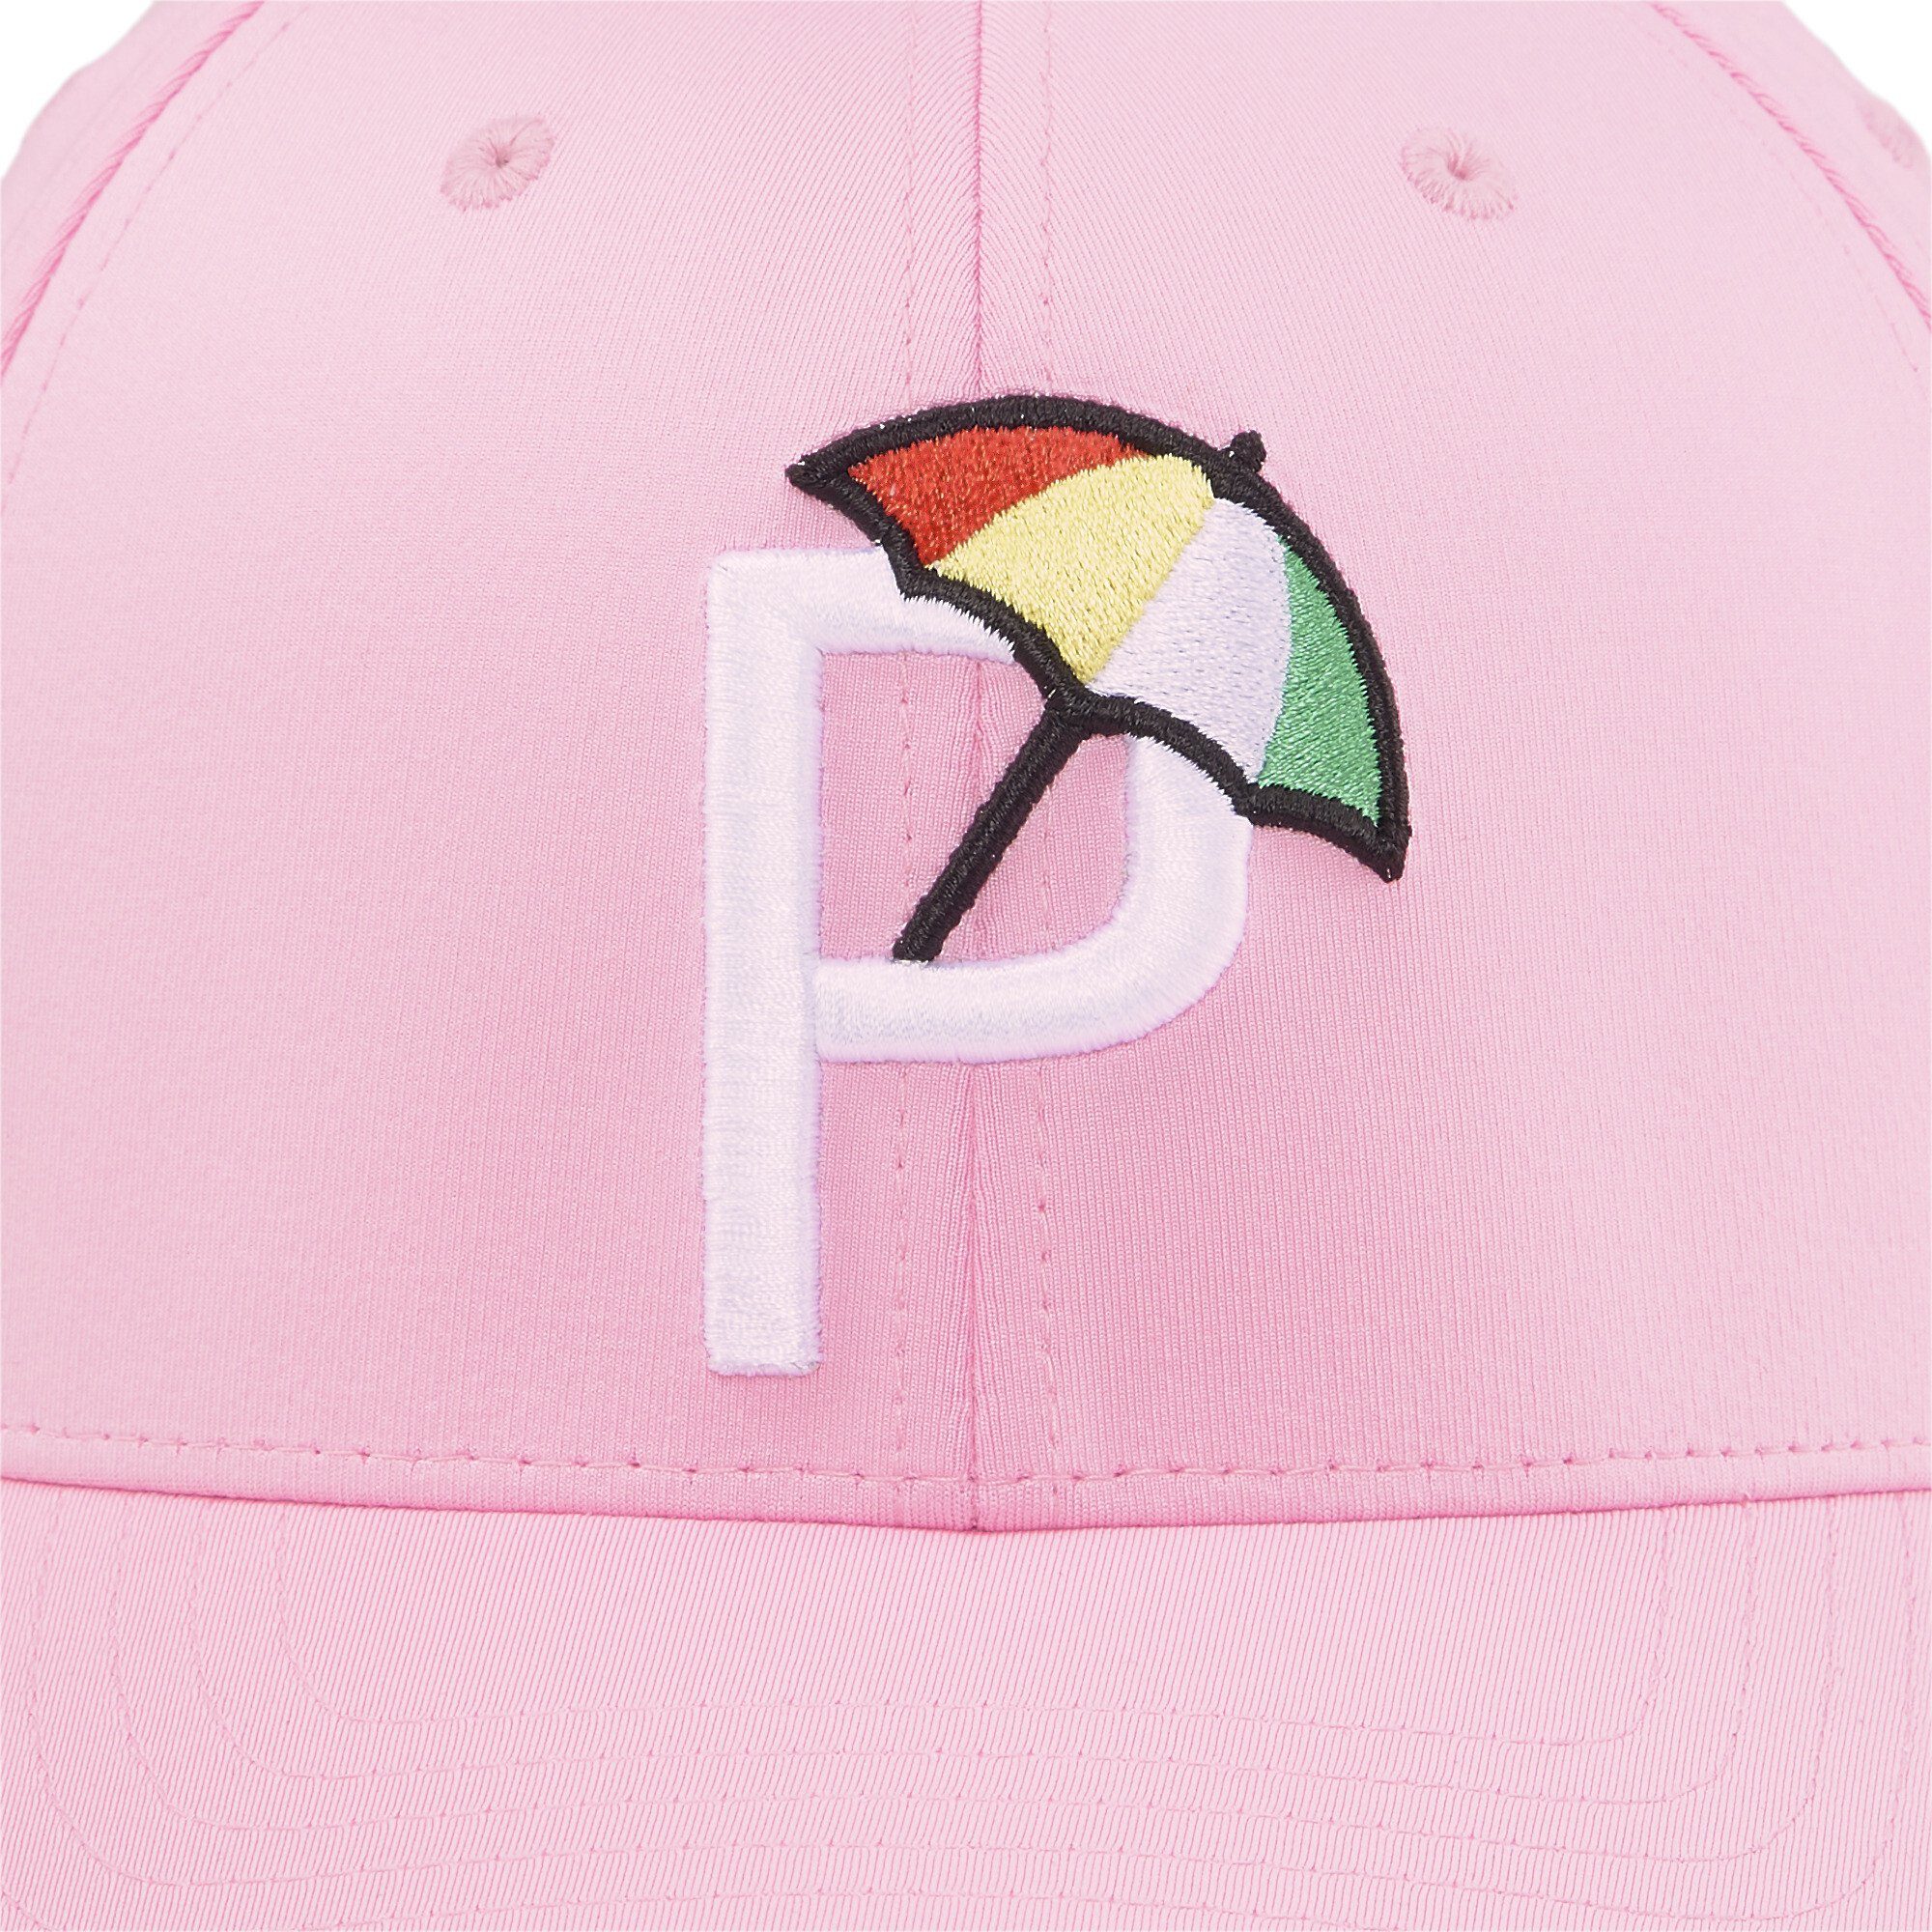 PUMA Flex Cap Palmer Herren Pale P White Golf Glow Pink Cap